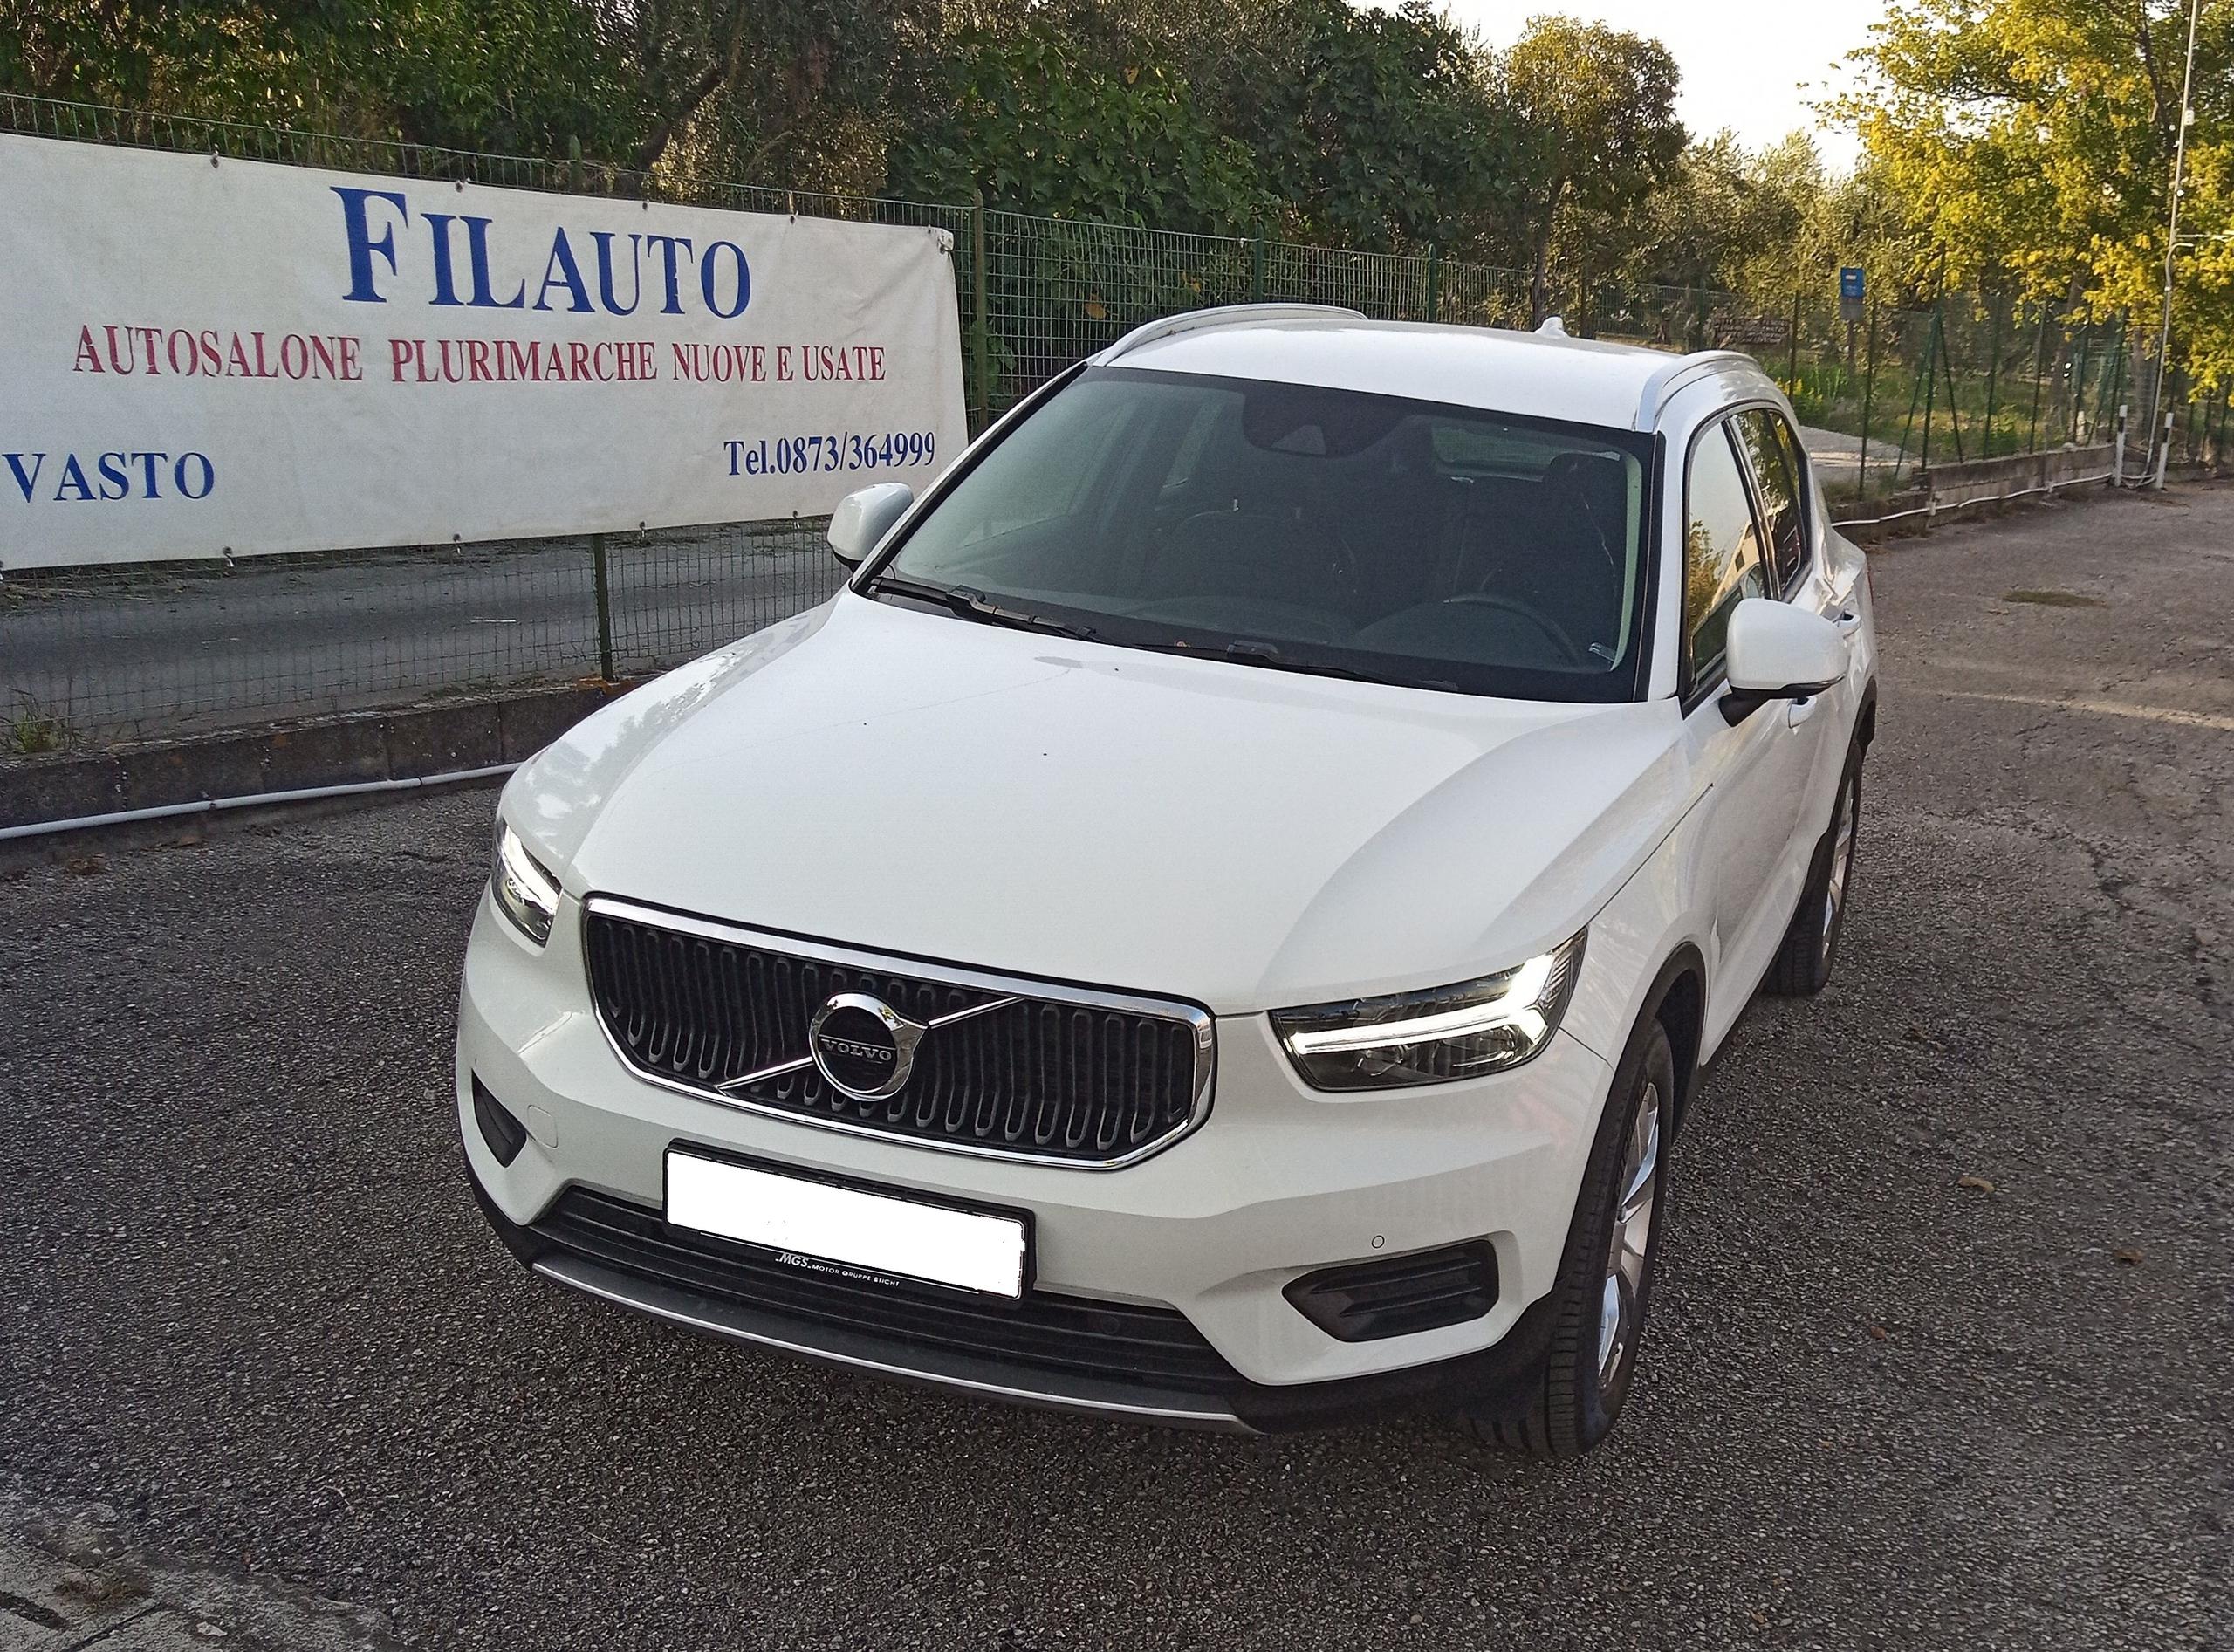 Volvo xc40 d3 Vasto (CH) €26,900  10/2019